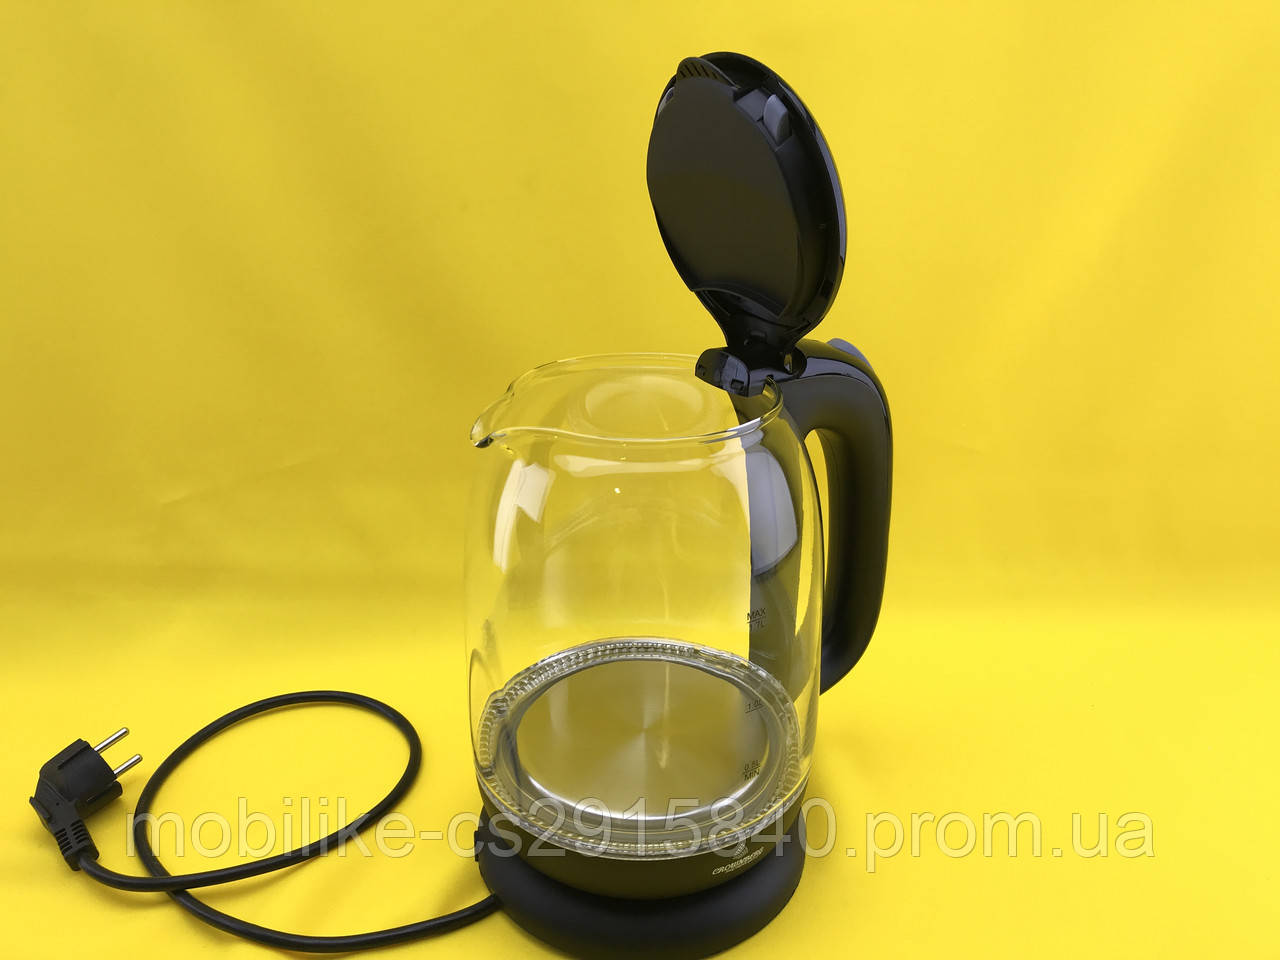 Прозорий скляний чайник із підсвічуванням 1,7 л Crownberg CB-9121 Black